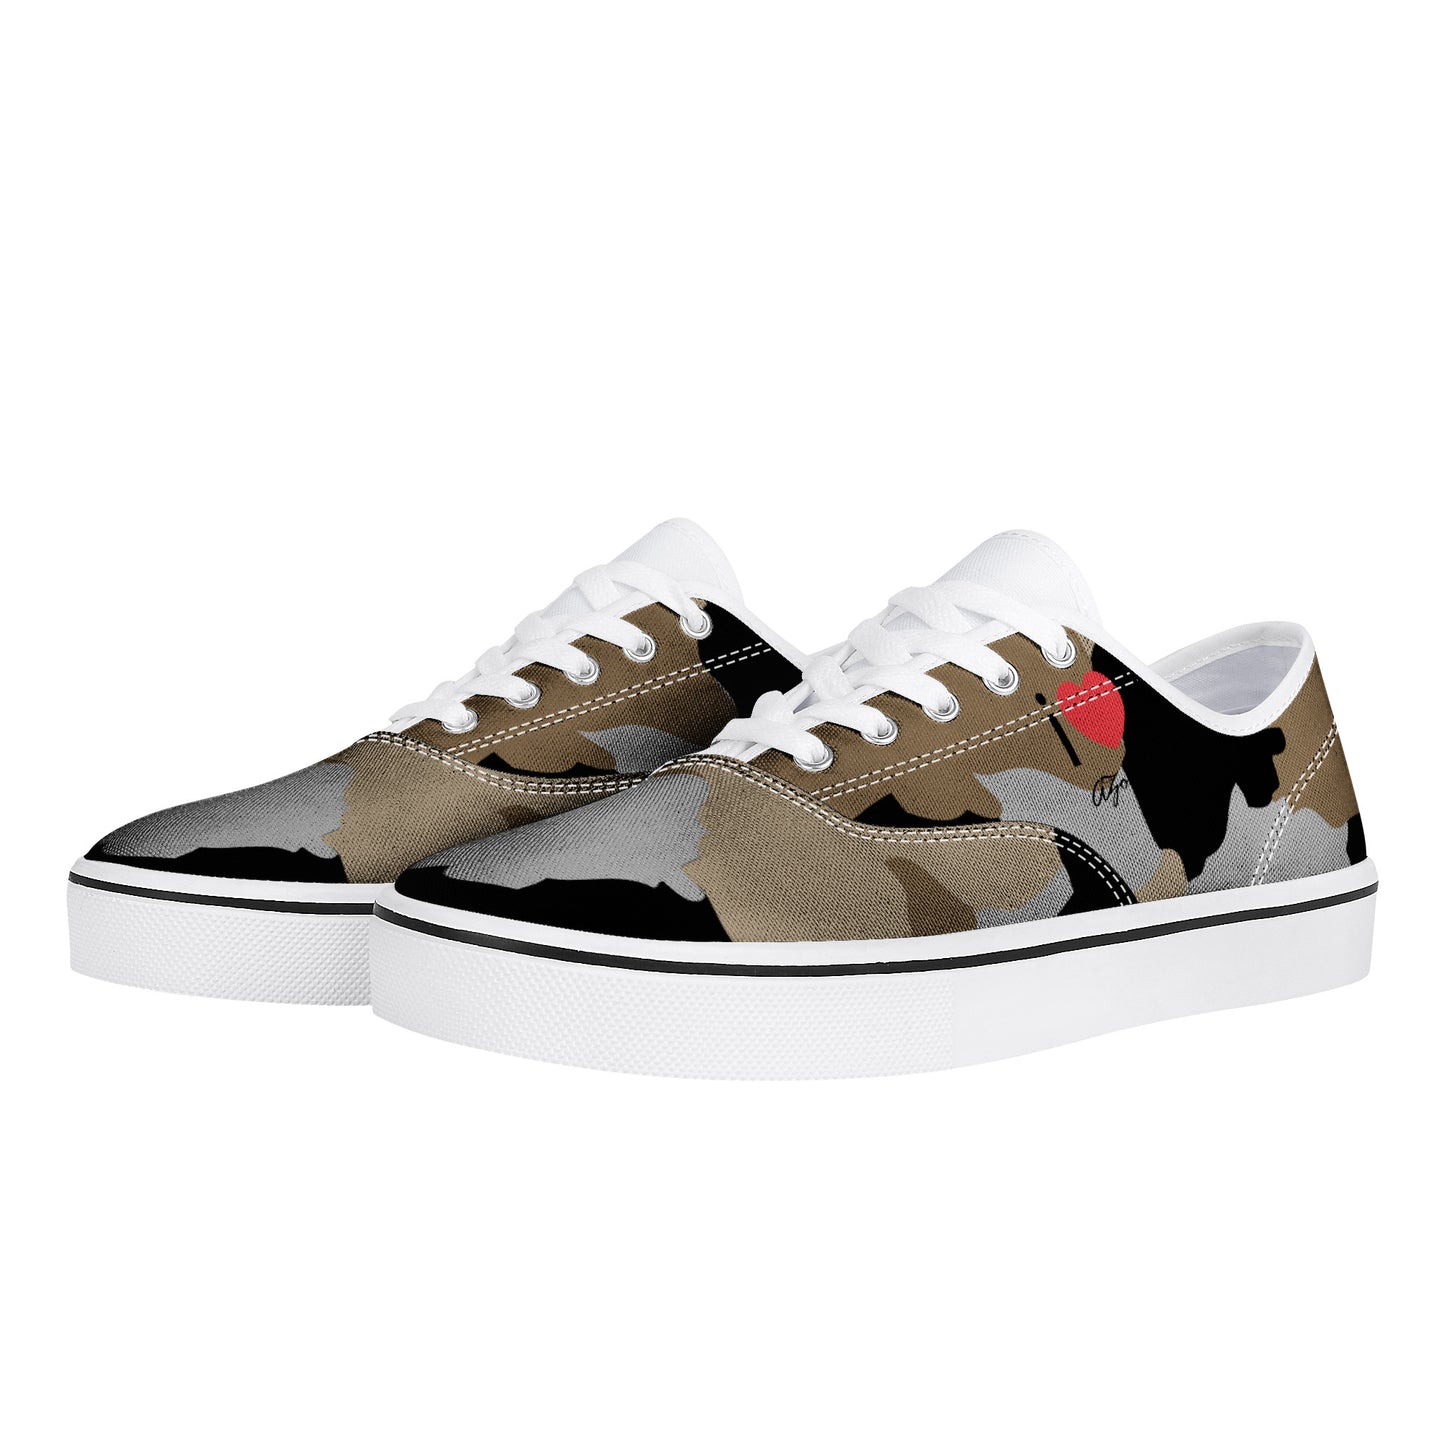 AZONTO Cam Skate Shoe - White